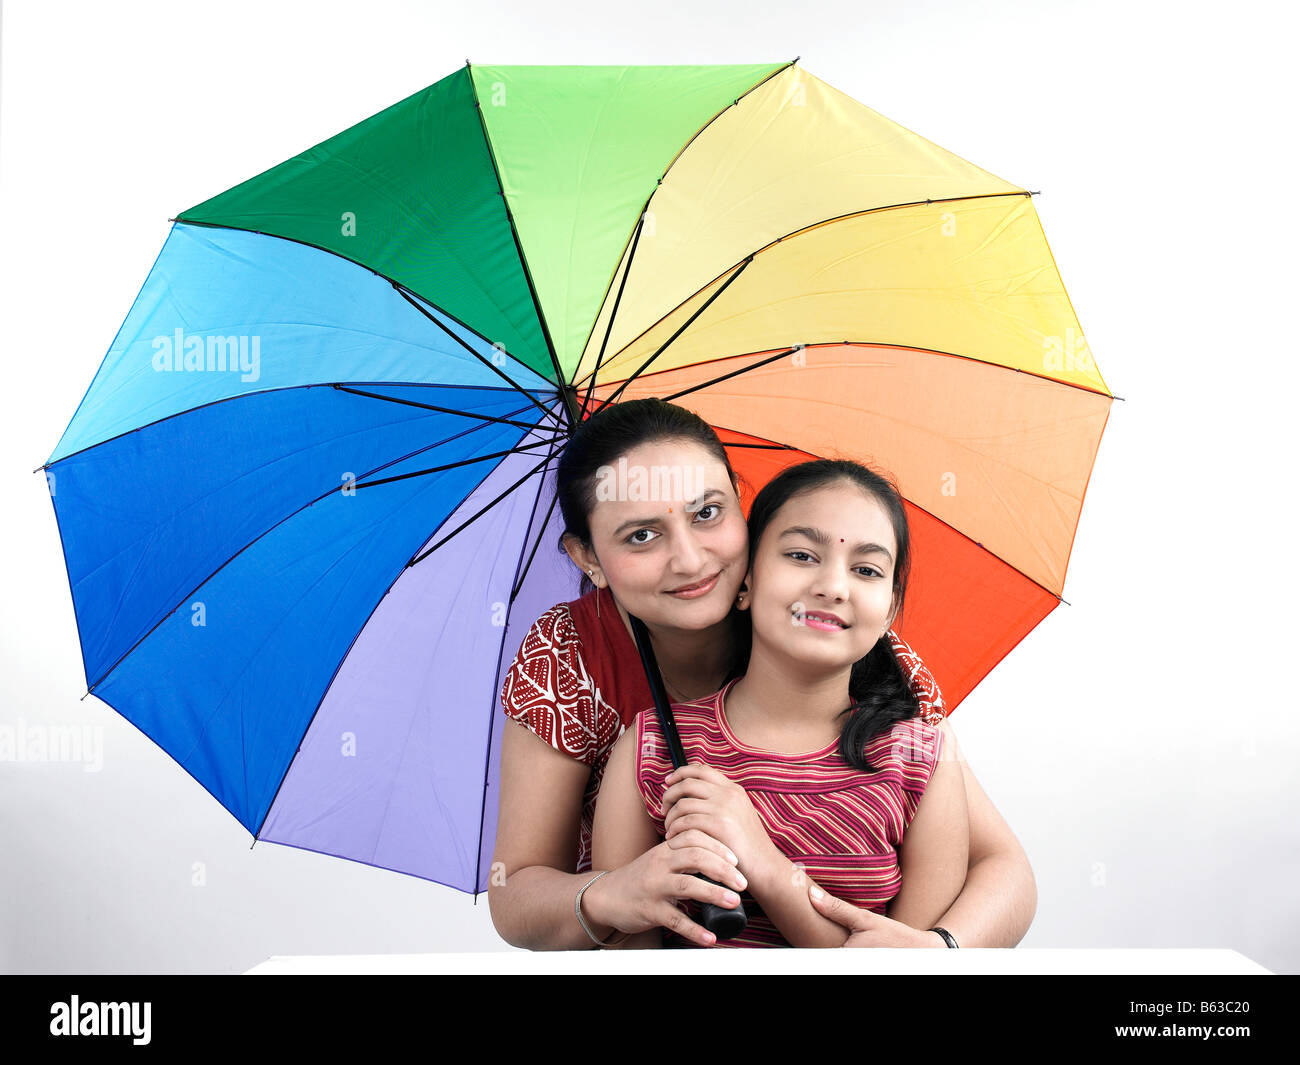 Зонтик семьи. Семья под зонтиком. Фото семья под зонтом. Пара с радужным зонтом. Мама с дочкой под зонтом Радуга.